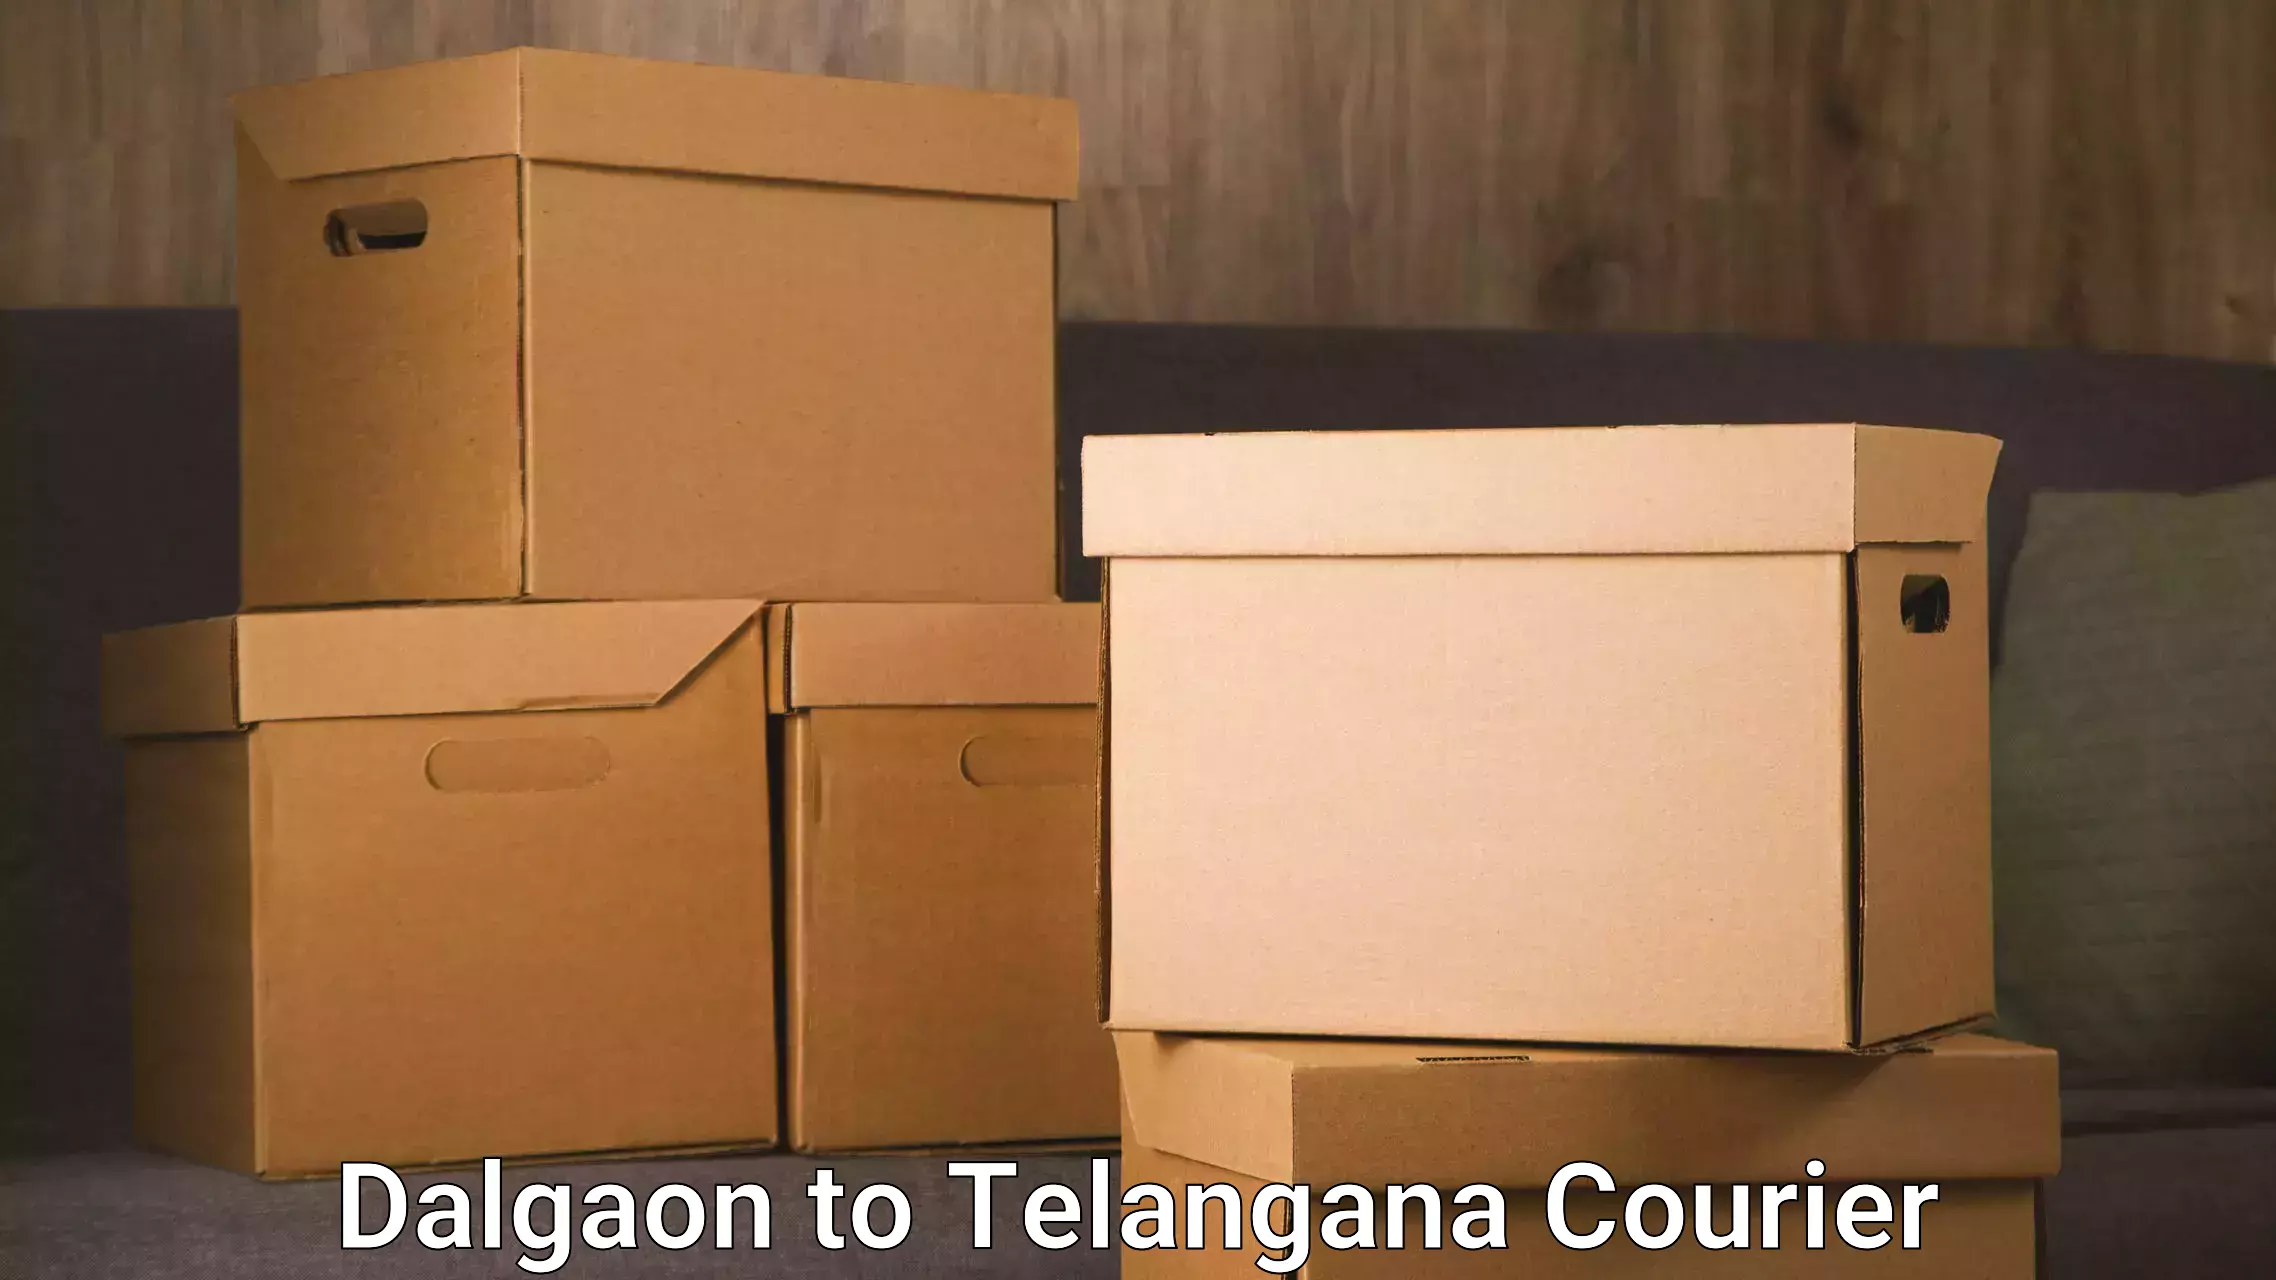 Global shipping solutions Dalgaon to Telangana